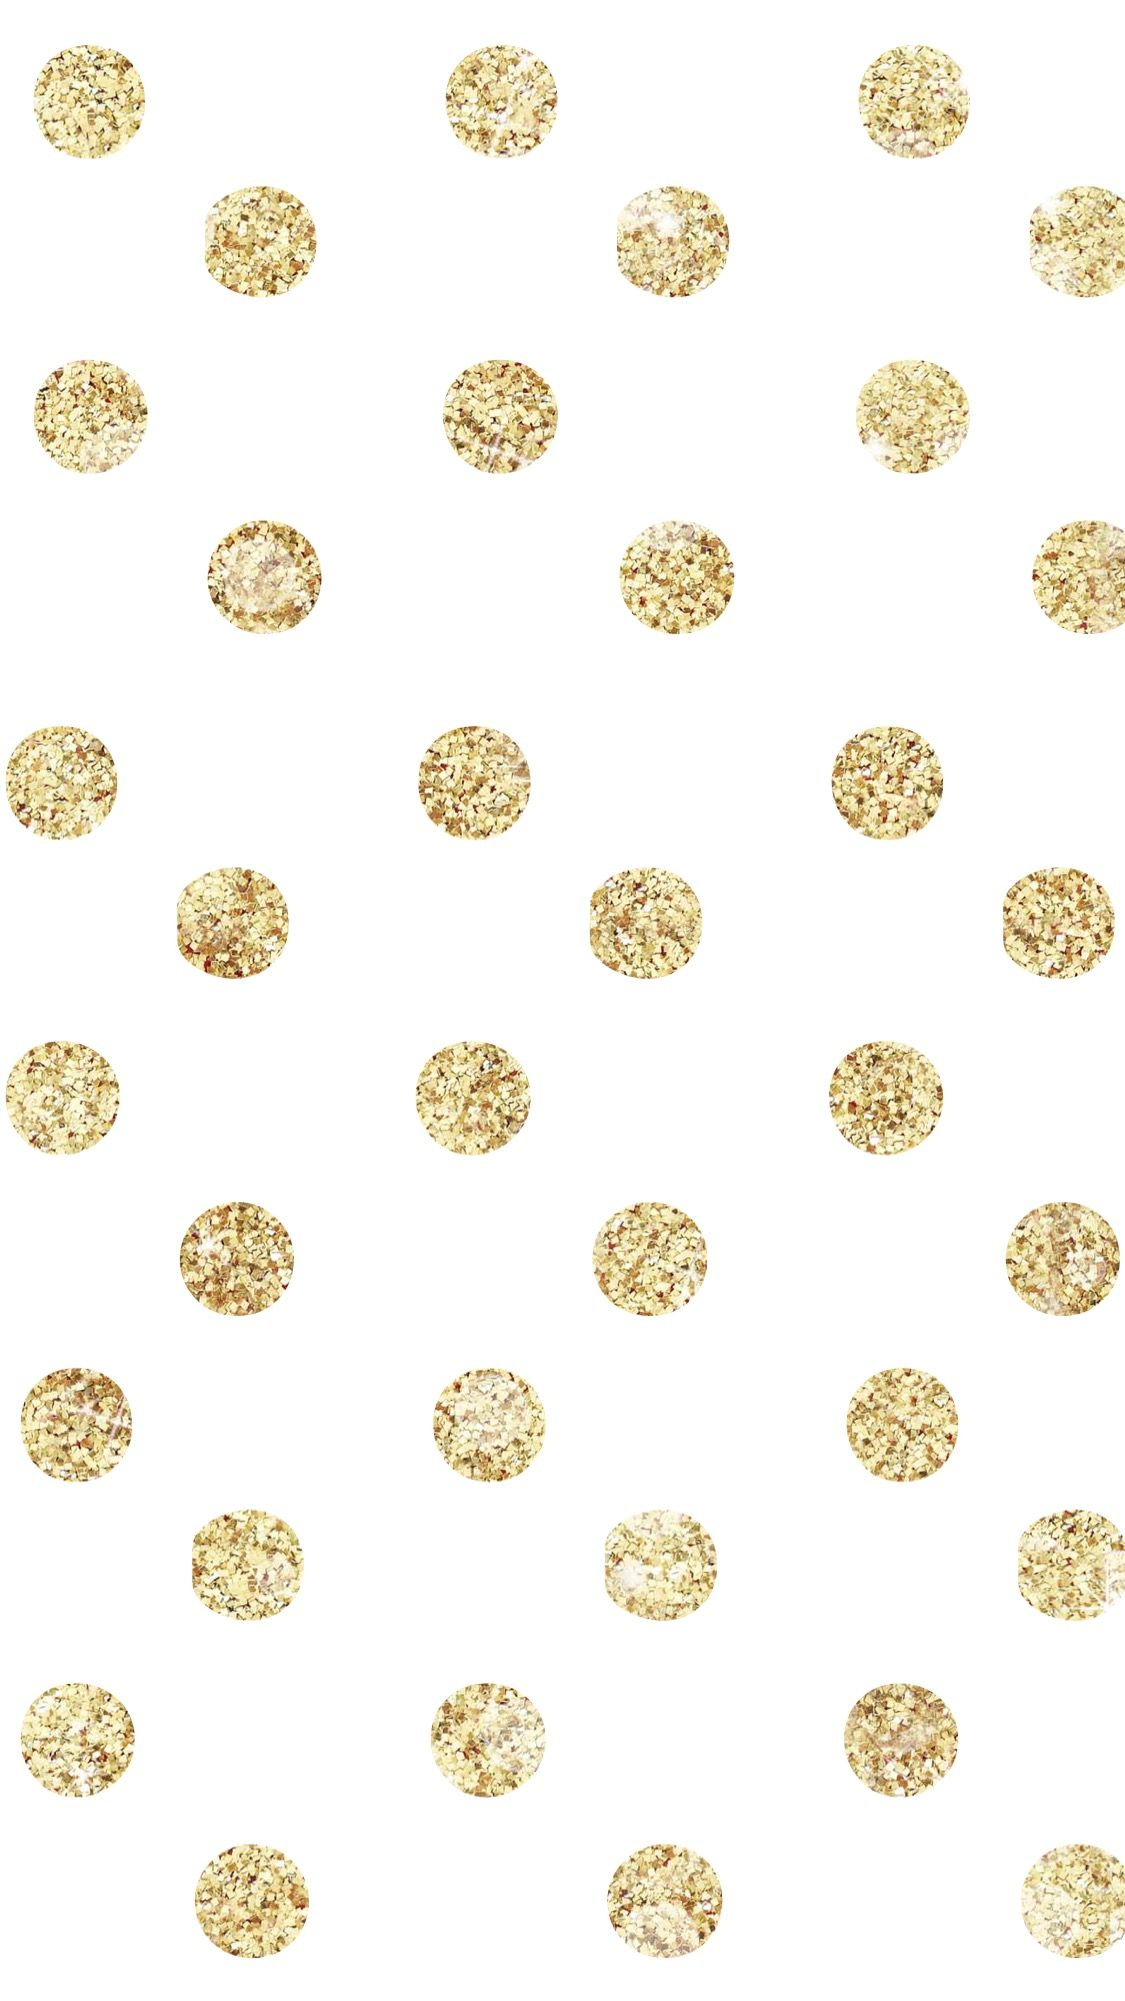 1125x2001 Glitter dots | Polka dots wallpaper, Glitter phone wallpaper, Iphone wallpaper